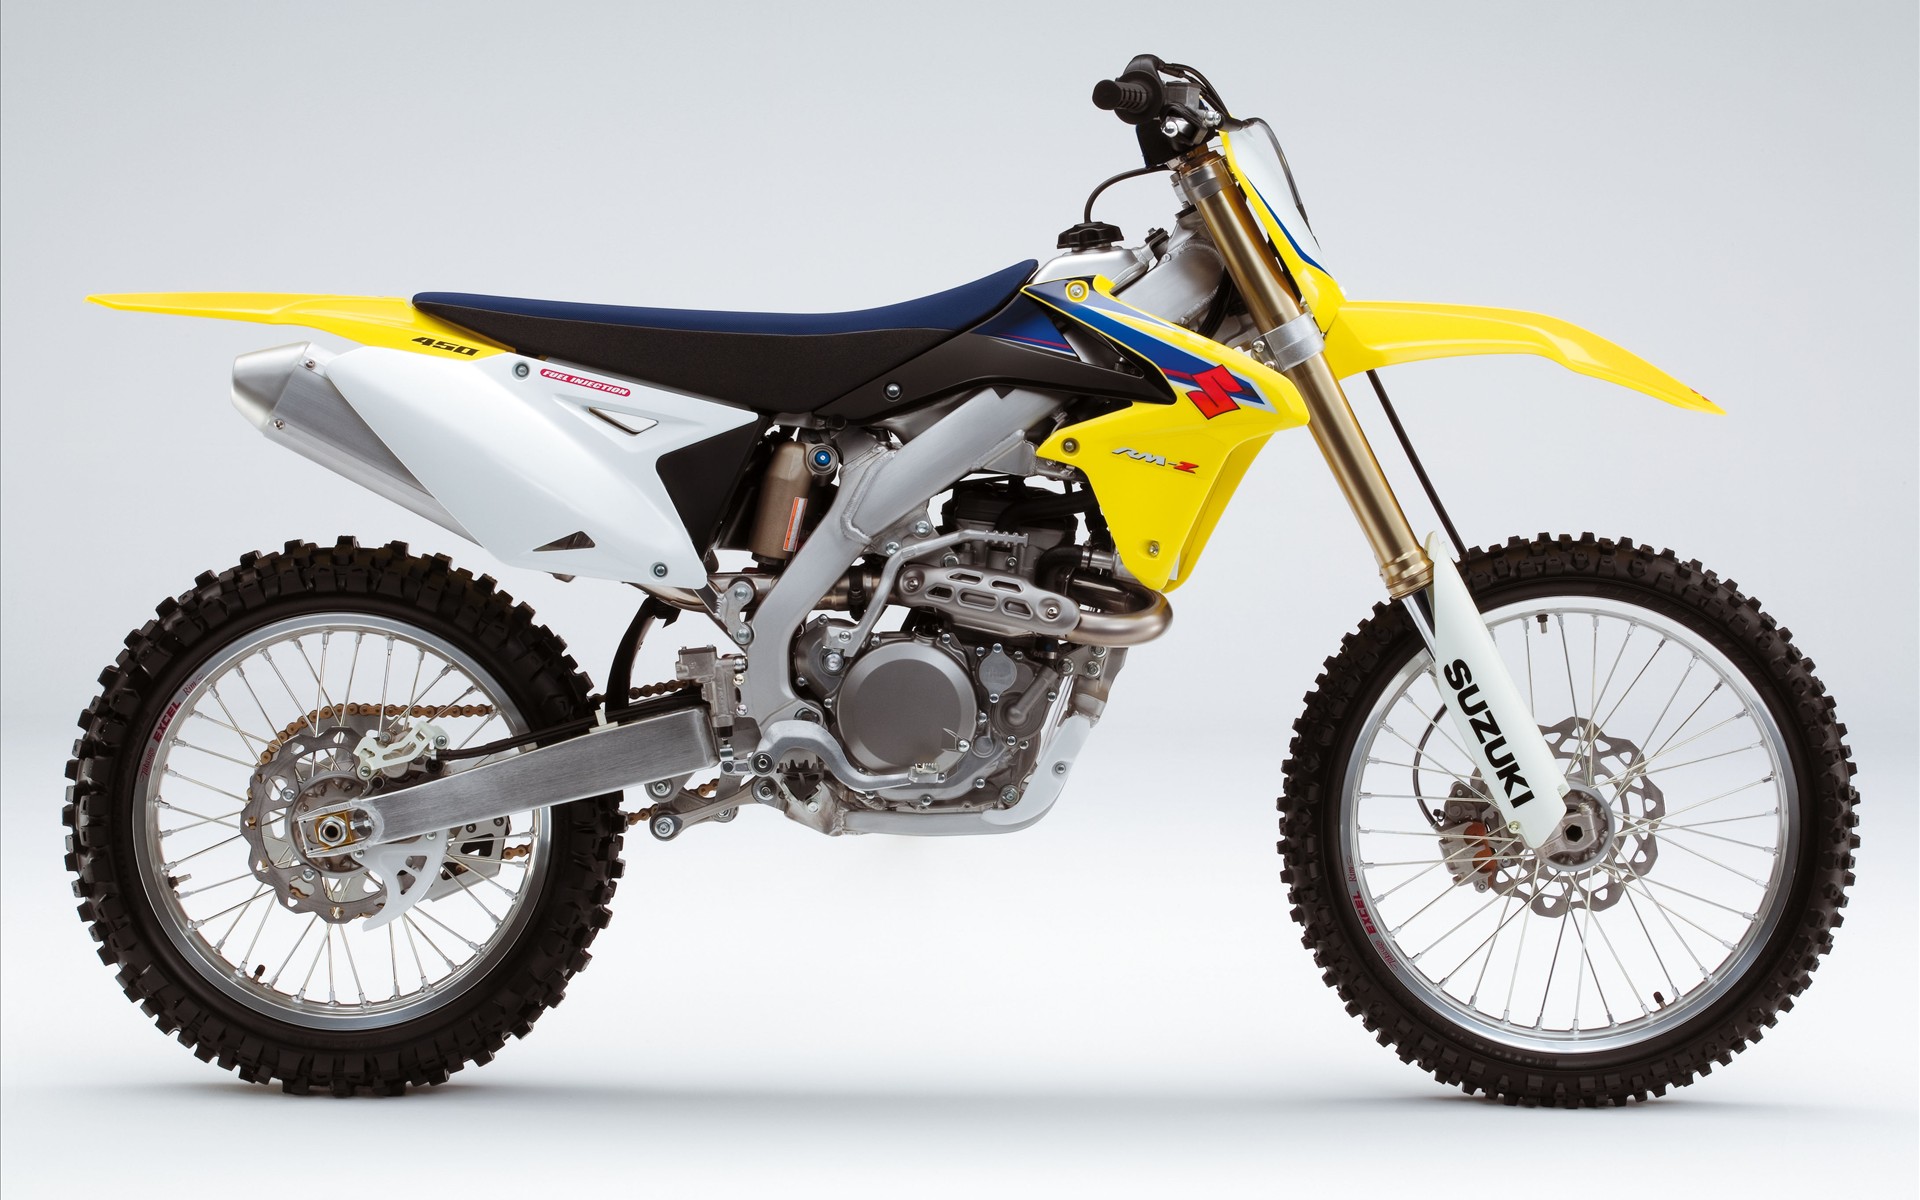 2009 Suzuki RM Z450 Motocross816809881 - 2009 Suzuki RM Z450 Motocross - Z450, Yamaha, Suzuki, Motocross, 2009